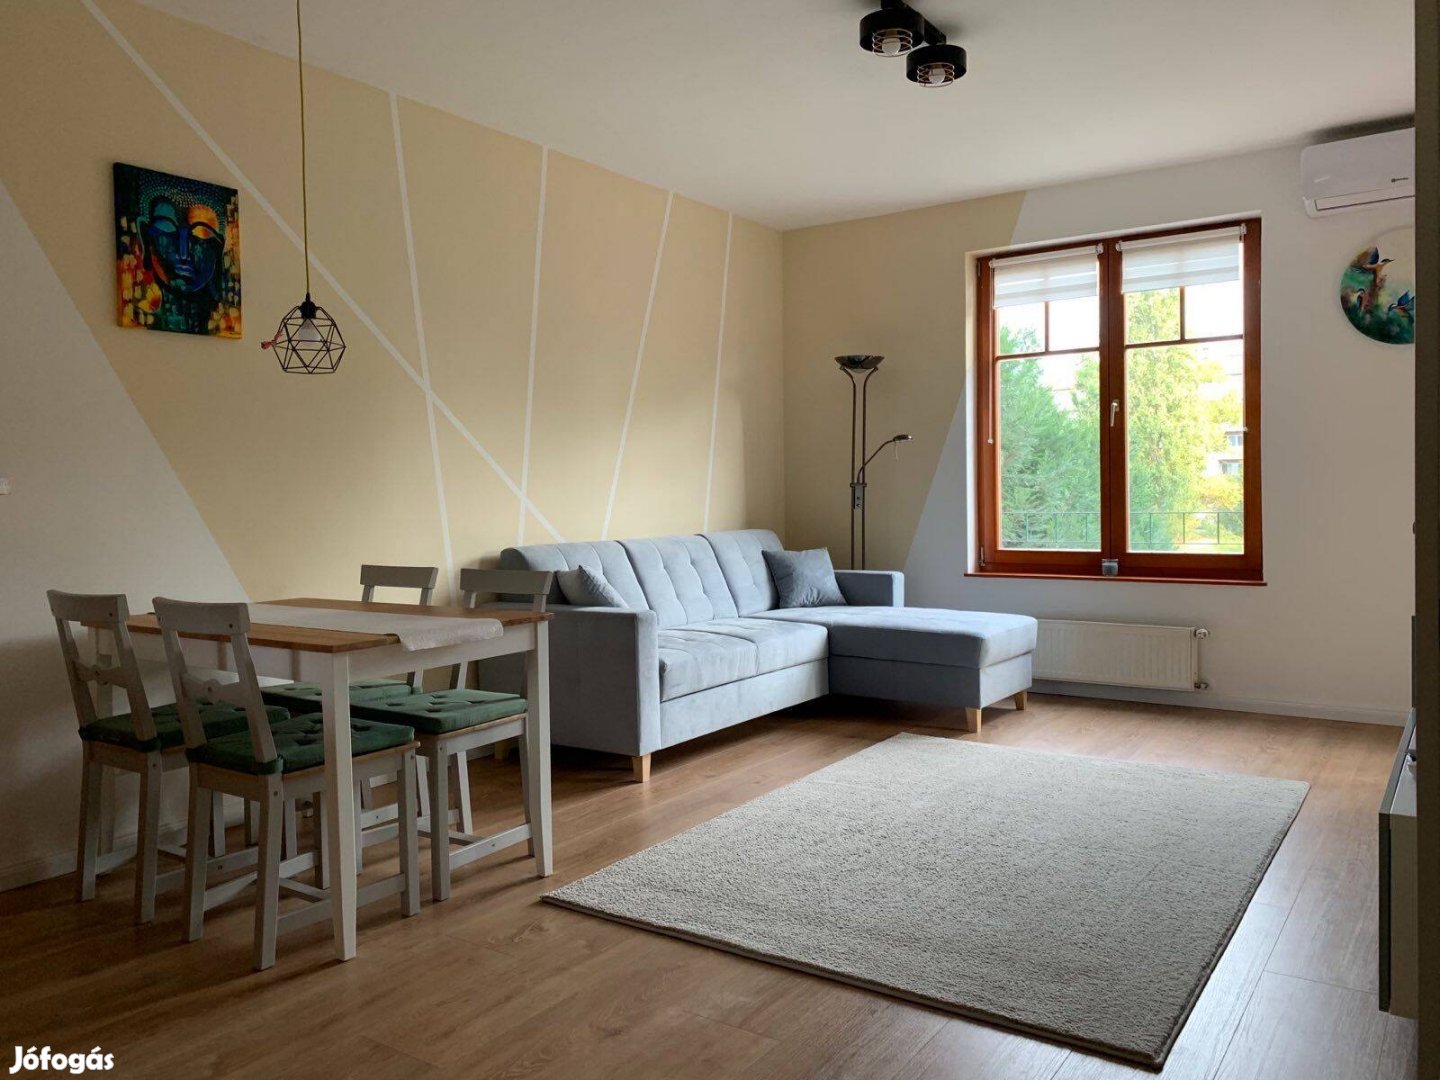 Azonnal költözhető lakás a Mediterrán lakóparkban